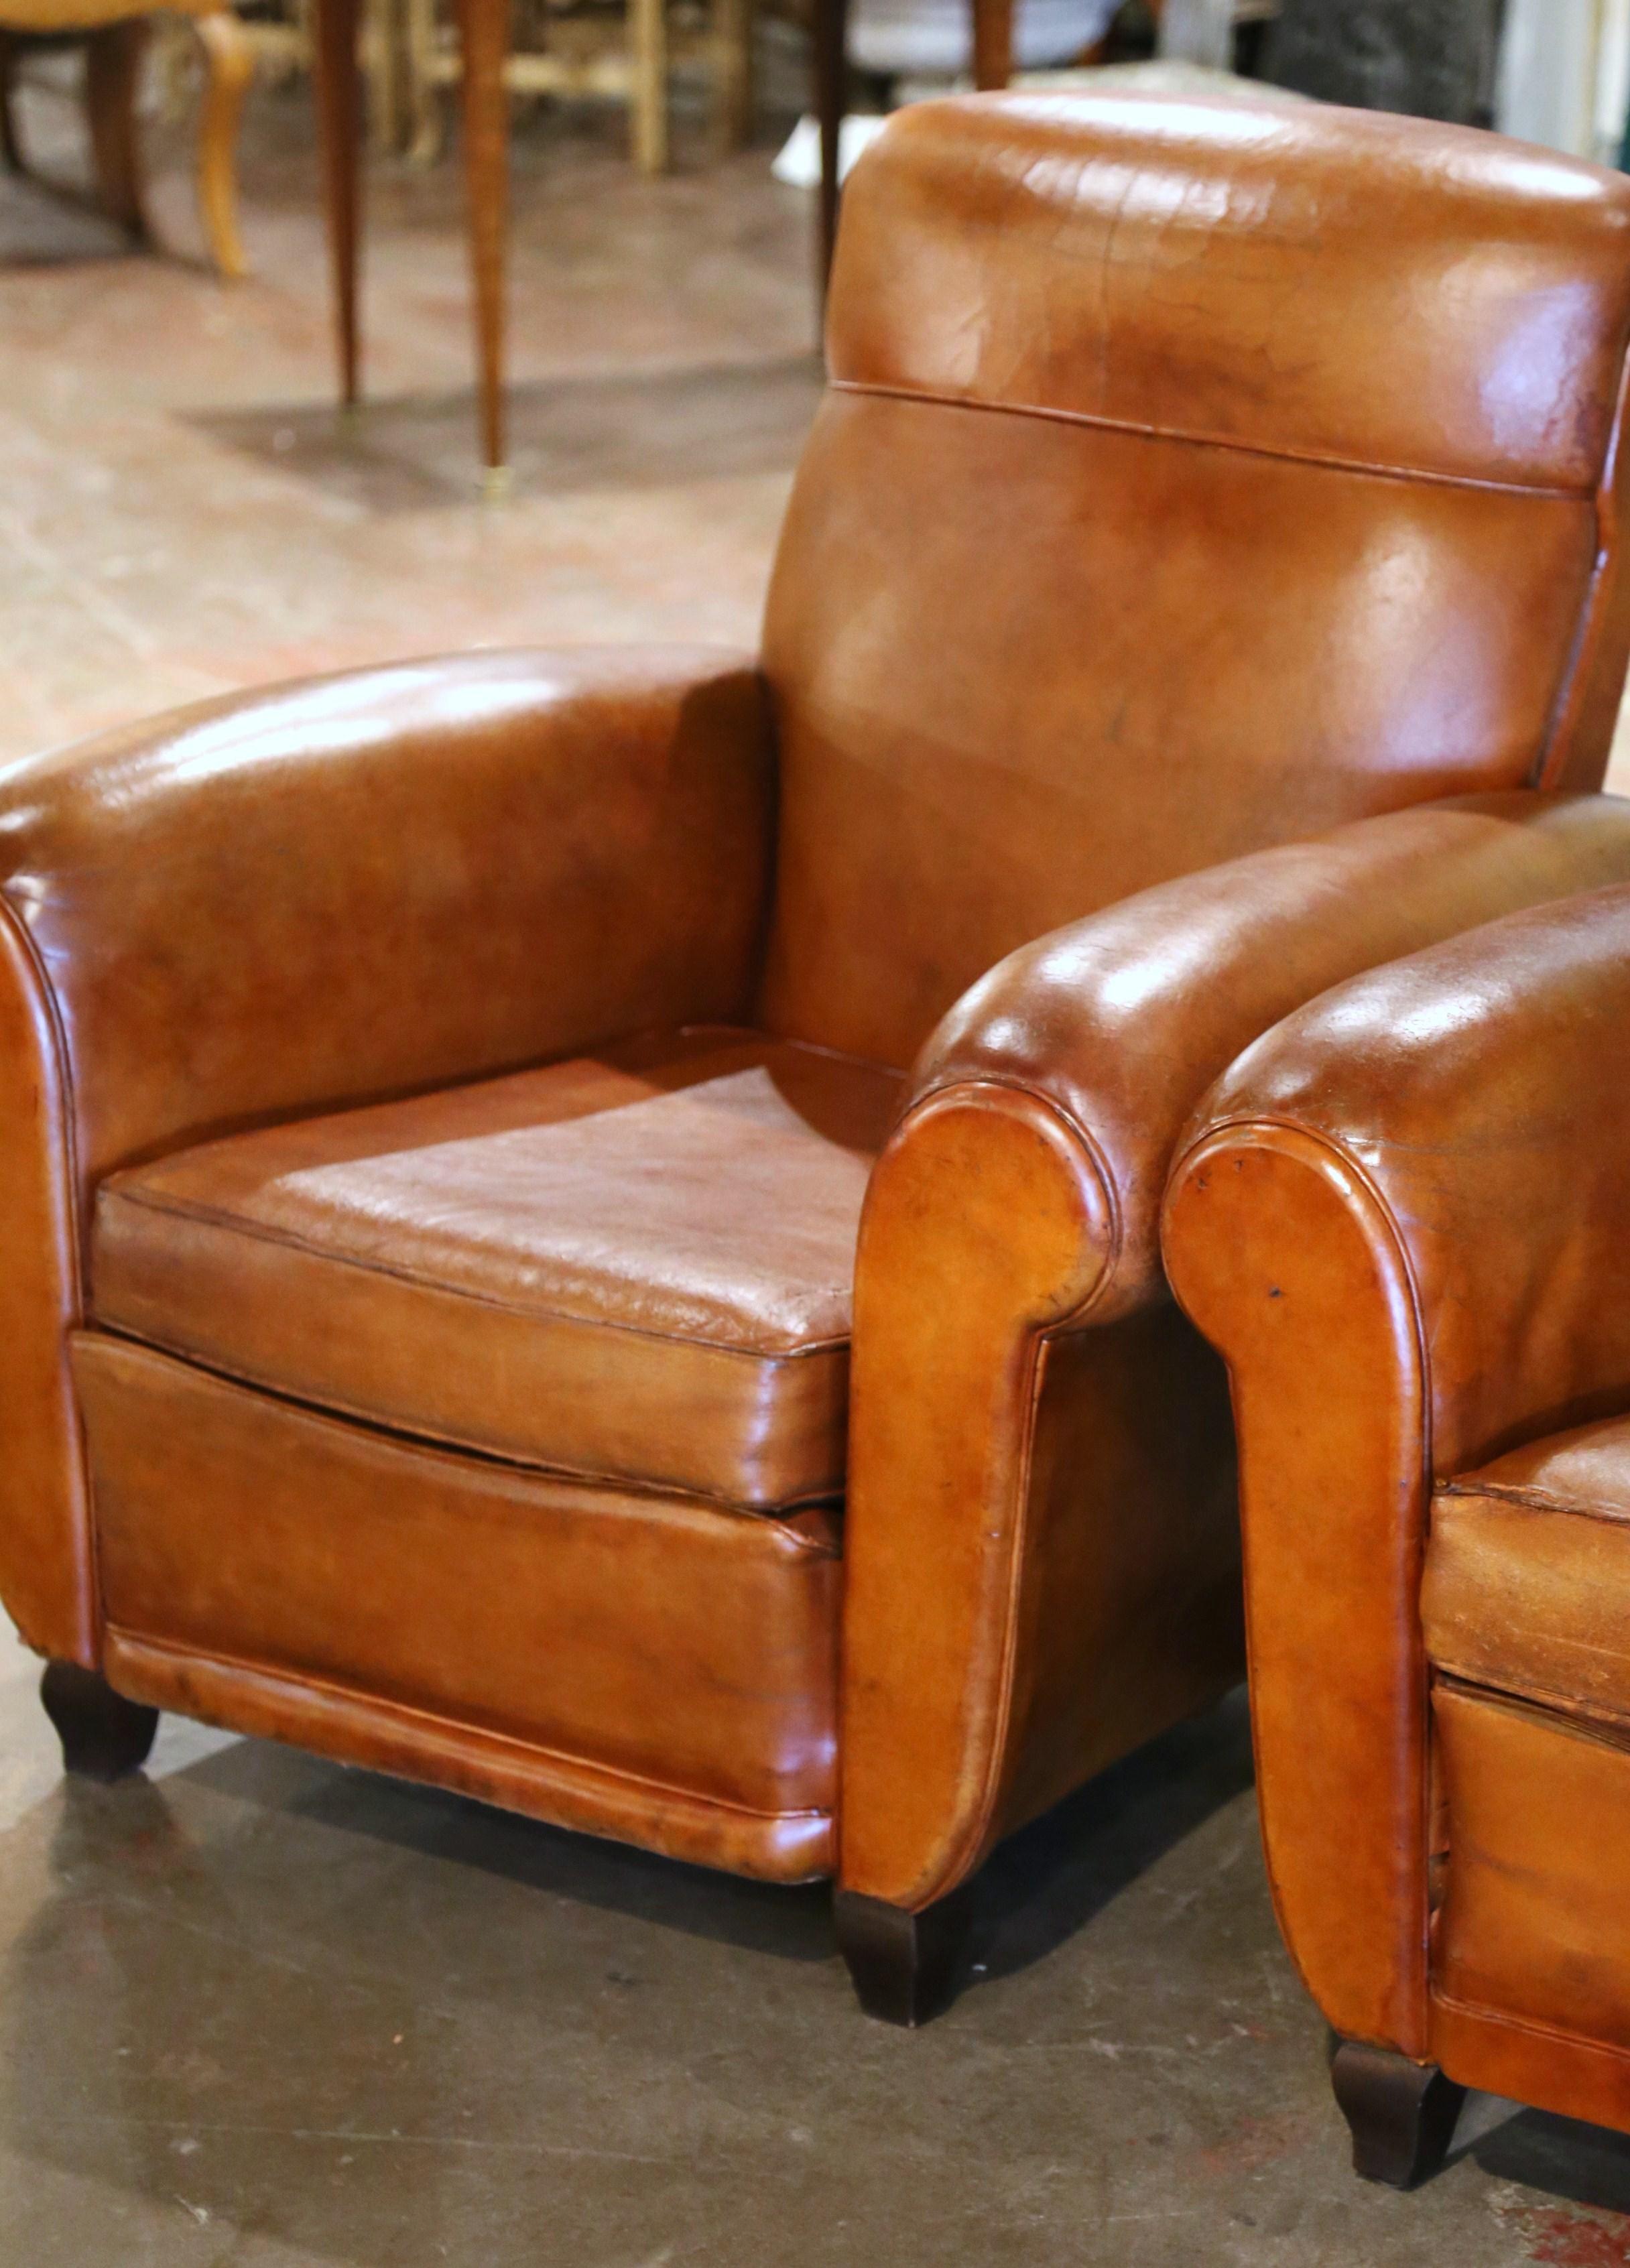 Ces fauteuils club classiques et anciens de style Art déco ont été fabriqués en France, vers 1920. Ces chaises imposantes sont dotées d'accoudoirs larges et arrondis, d'un dossier en forme d'arche et de pieds carrés en bois à la base. Les chaises